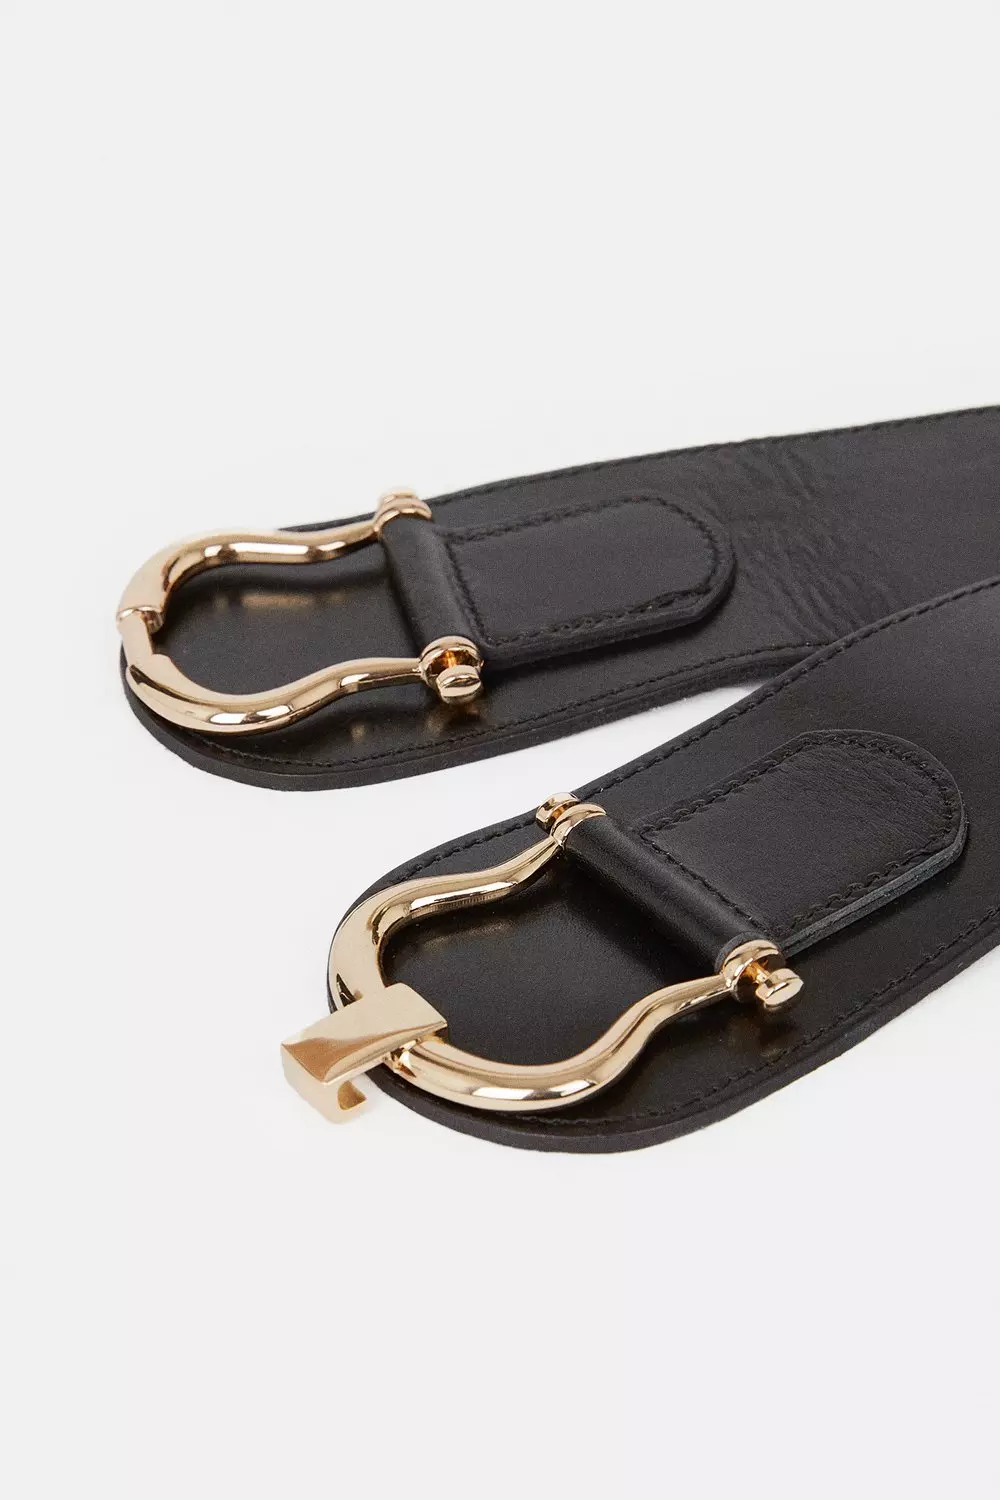 Leather Stretch Wide Waist Belt | Karen Millen